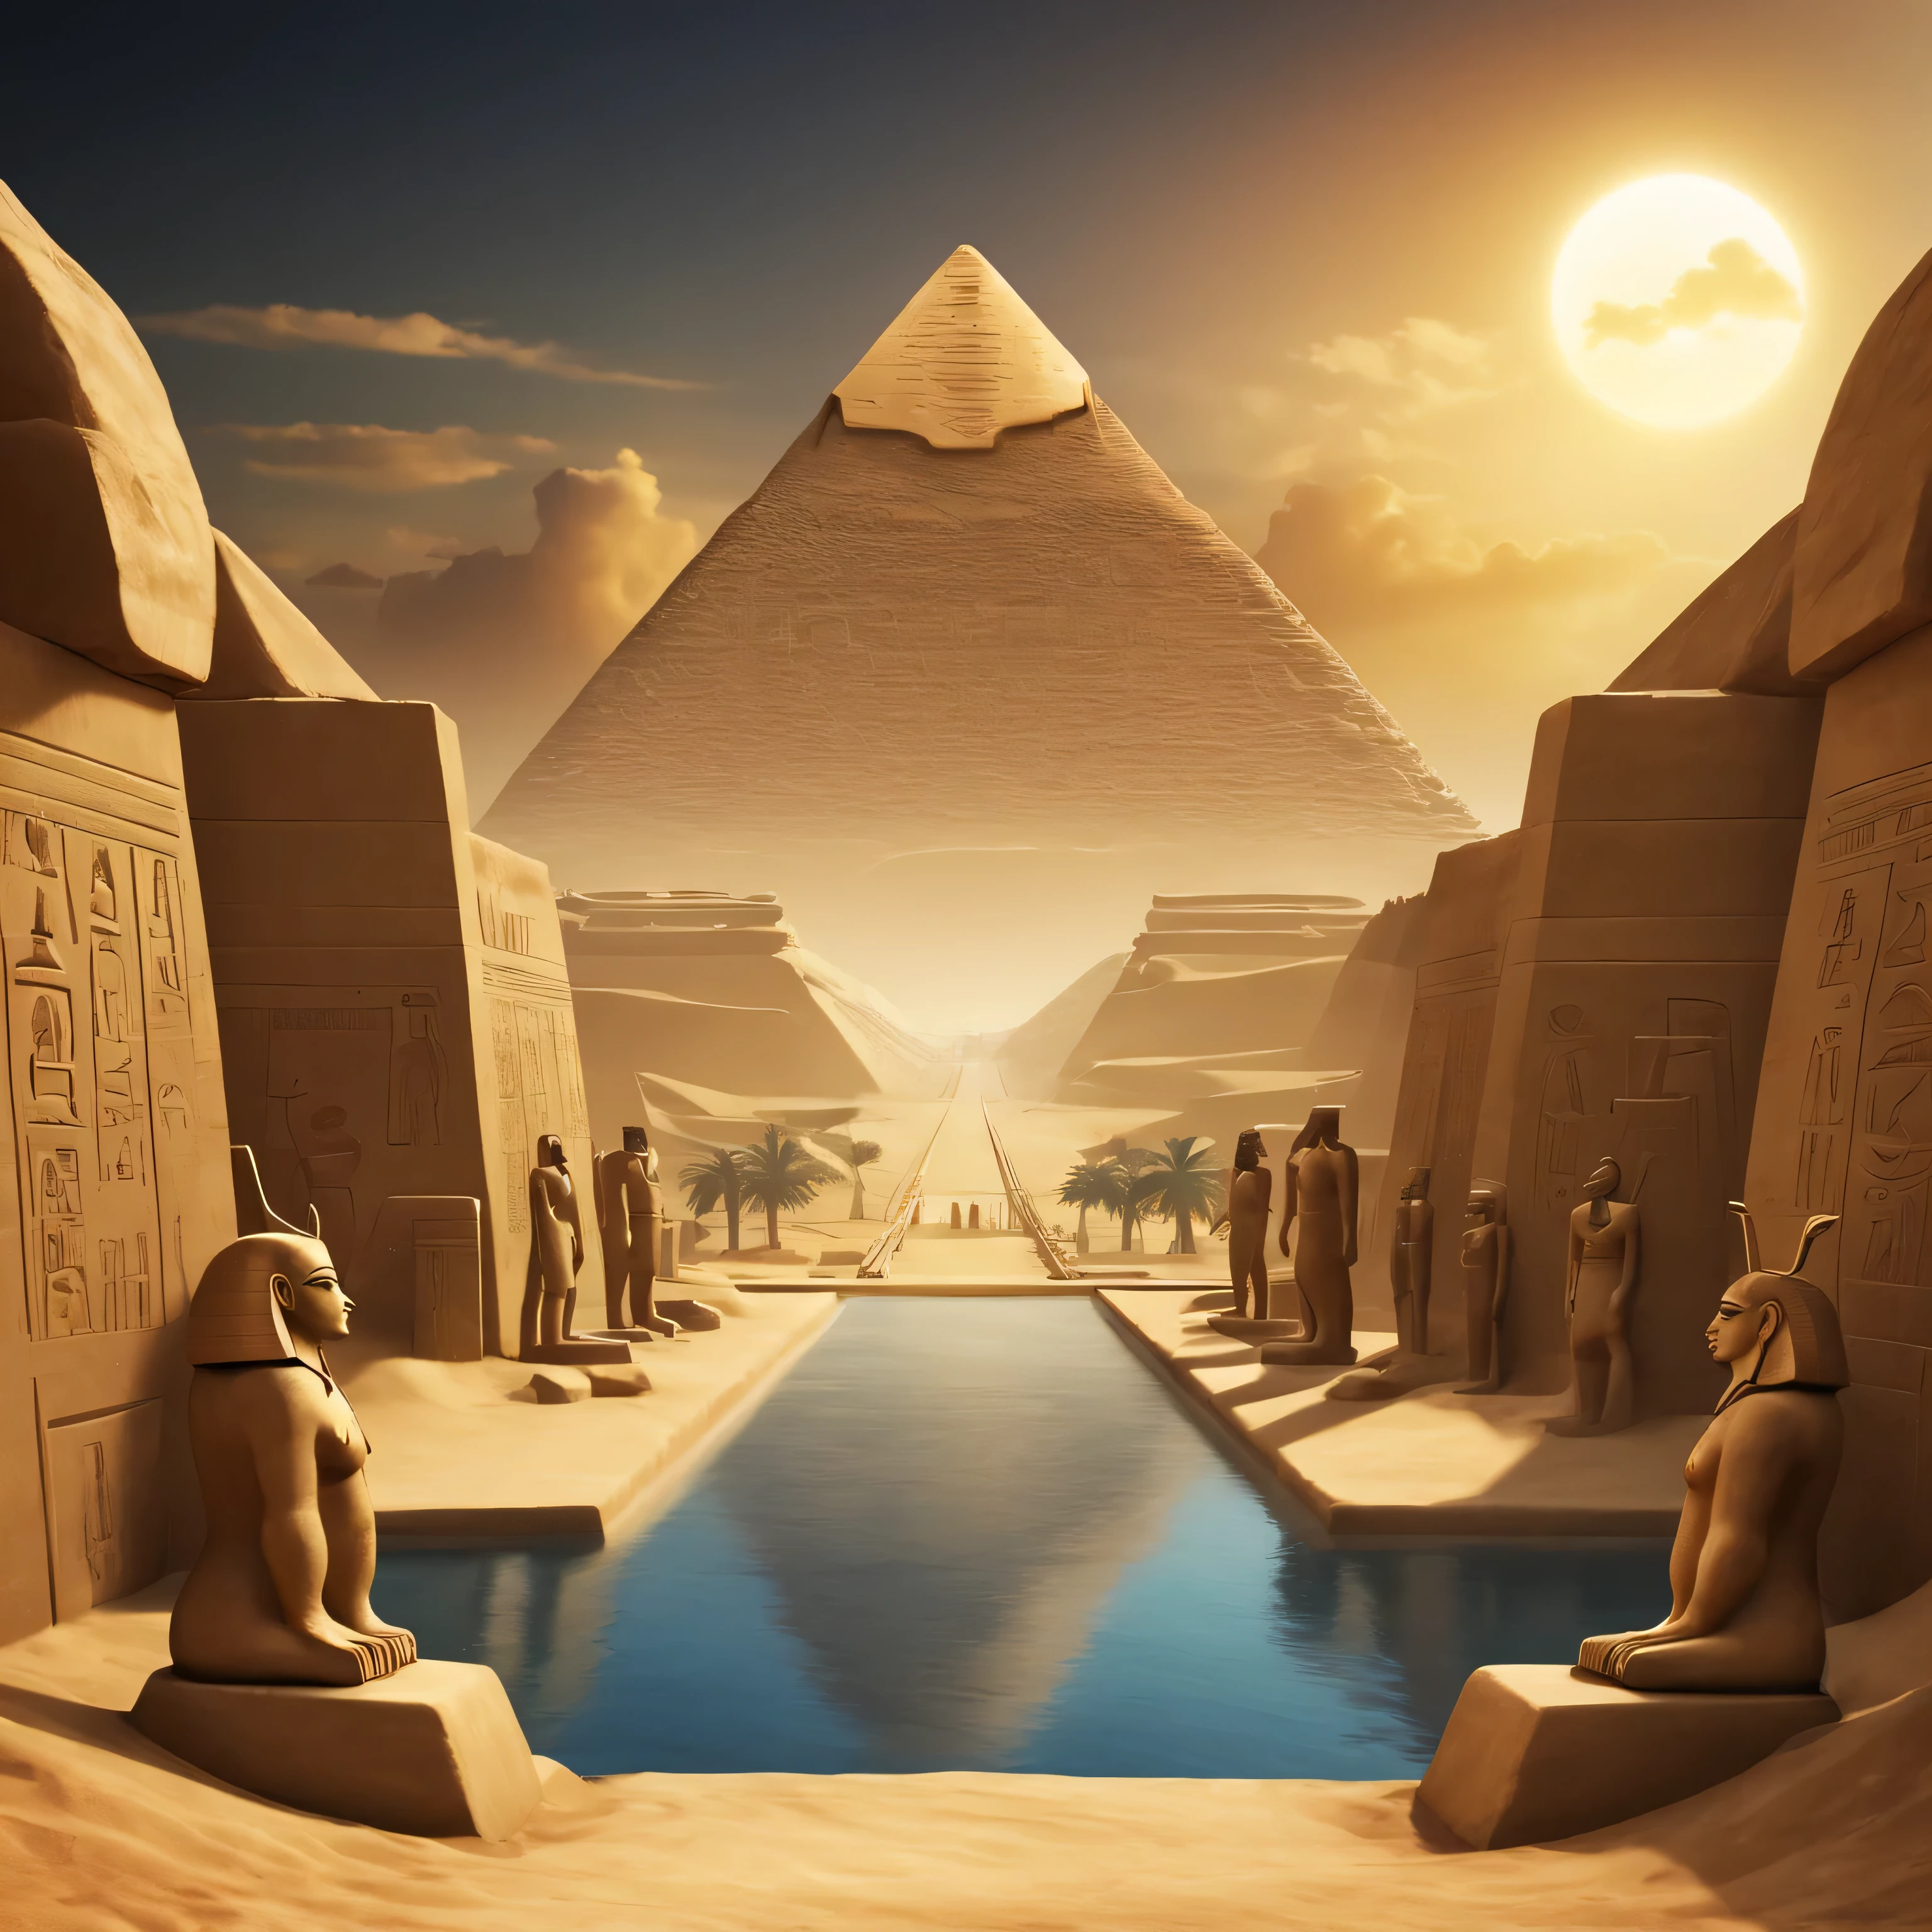 ภูมิทัศน์ที่มองเห็นเทพเจ้าหลักทั้งหมดของอียิปต์โบราณได้บนขอบฟ้า. ควรใช้สัญลักษณ์และรูปร่างเฉพาะสำหรับอียิปต์โบราณในพื้นหลังและระยะขอบ. อย่างน้อย 4 เทพ...